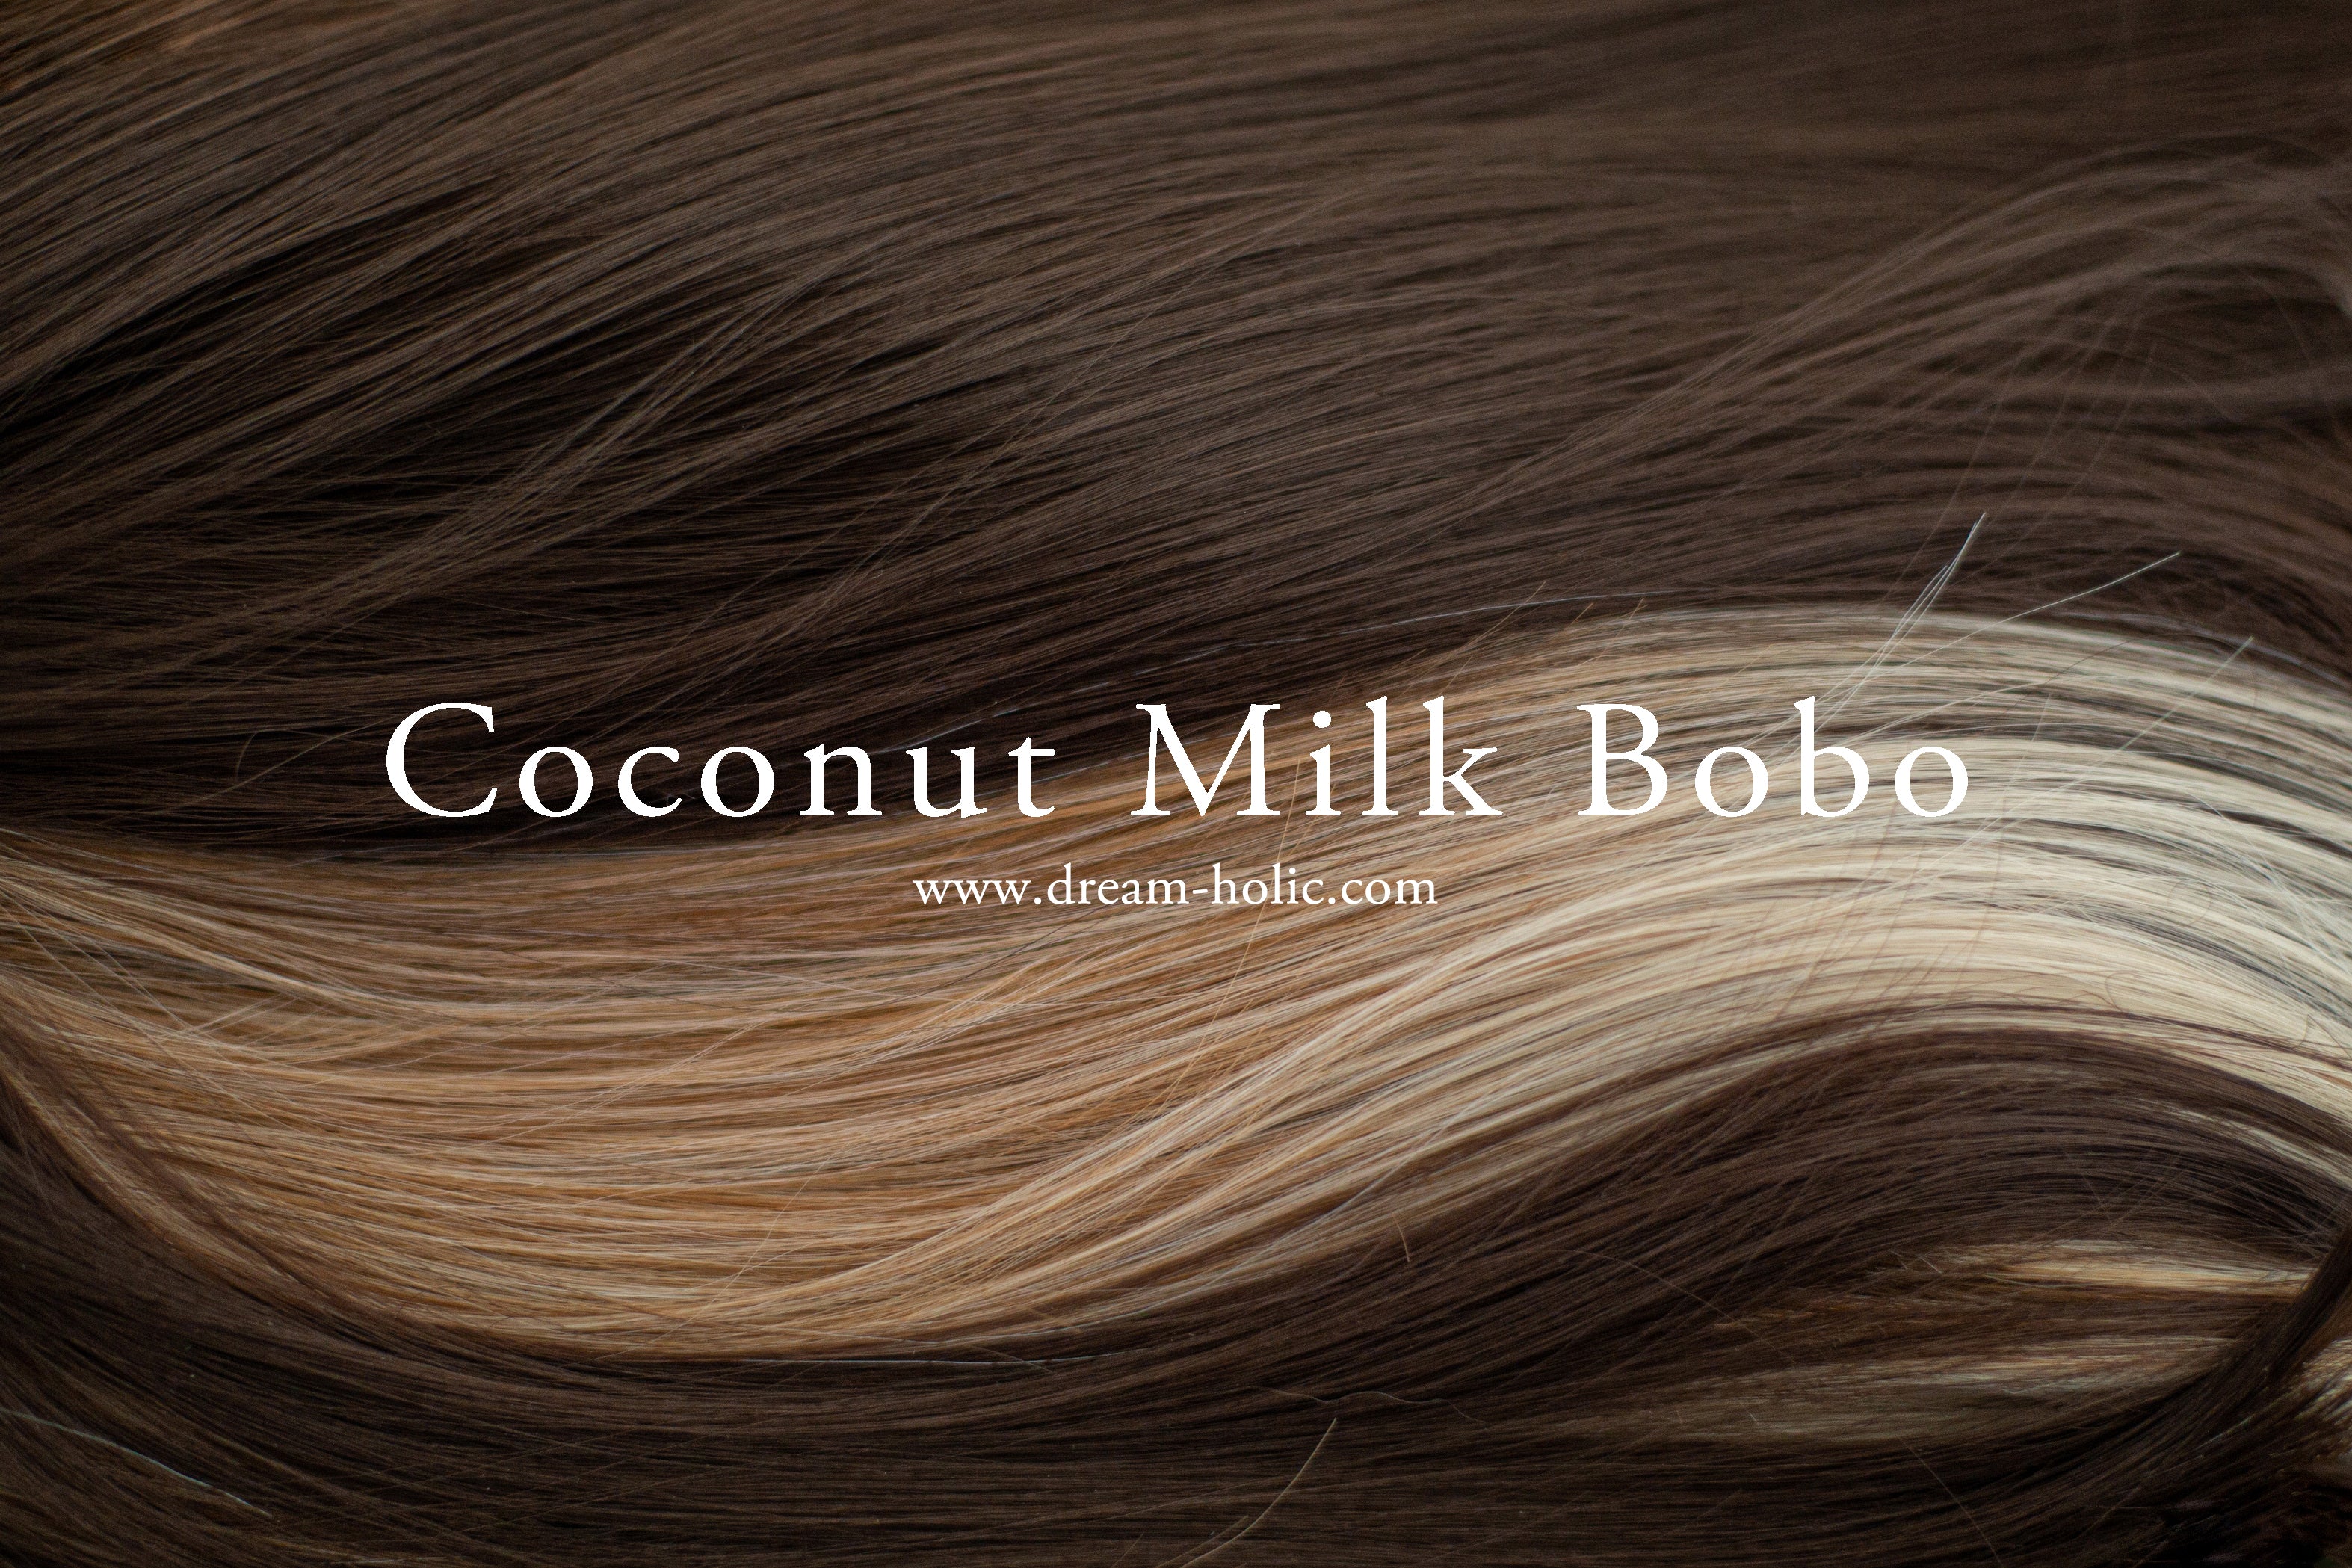 Coconut Milk Bobo